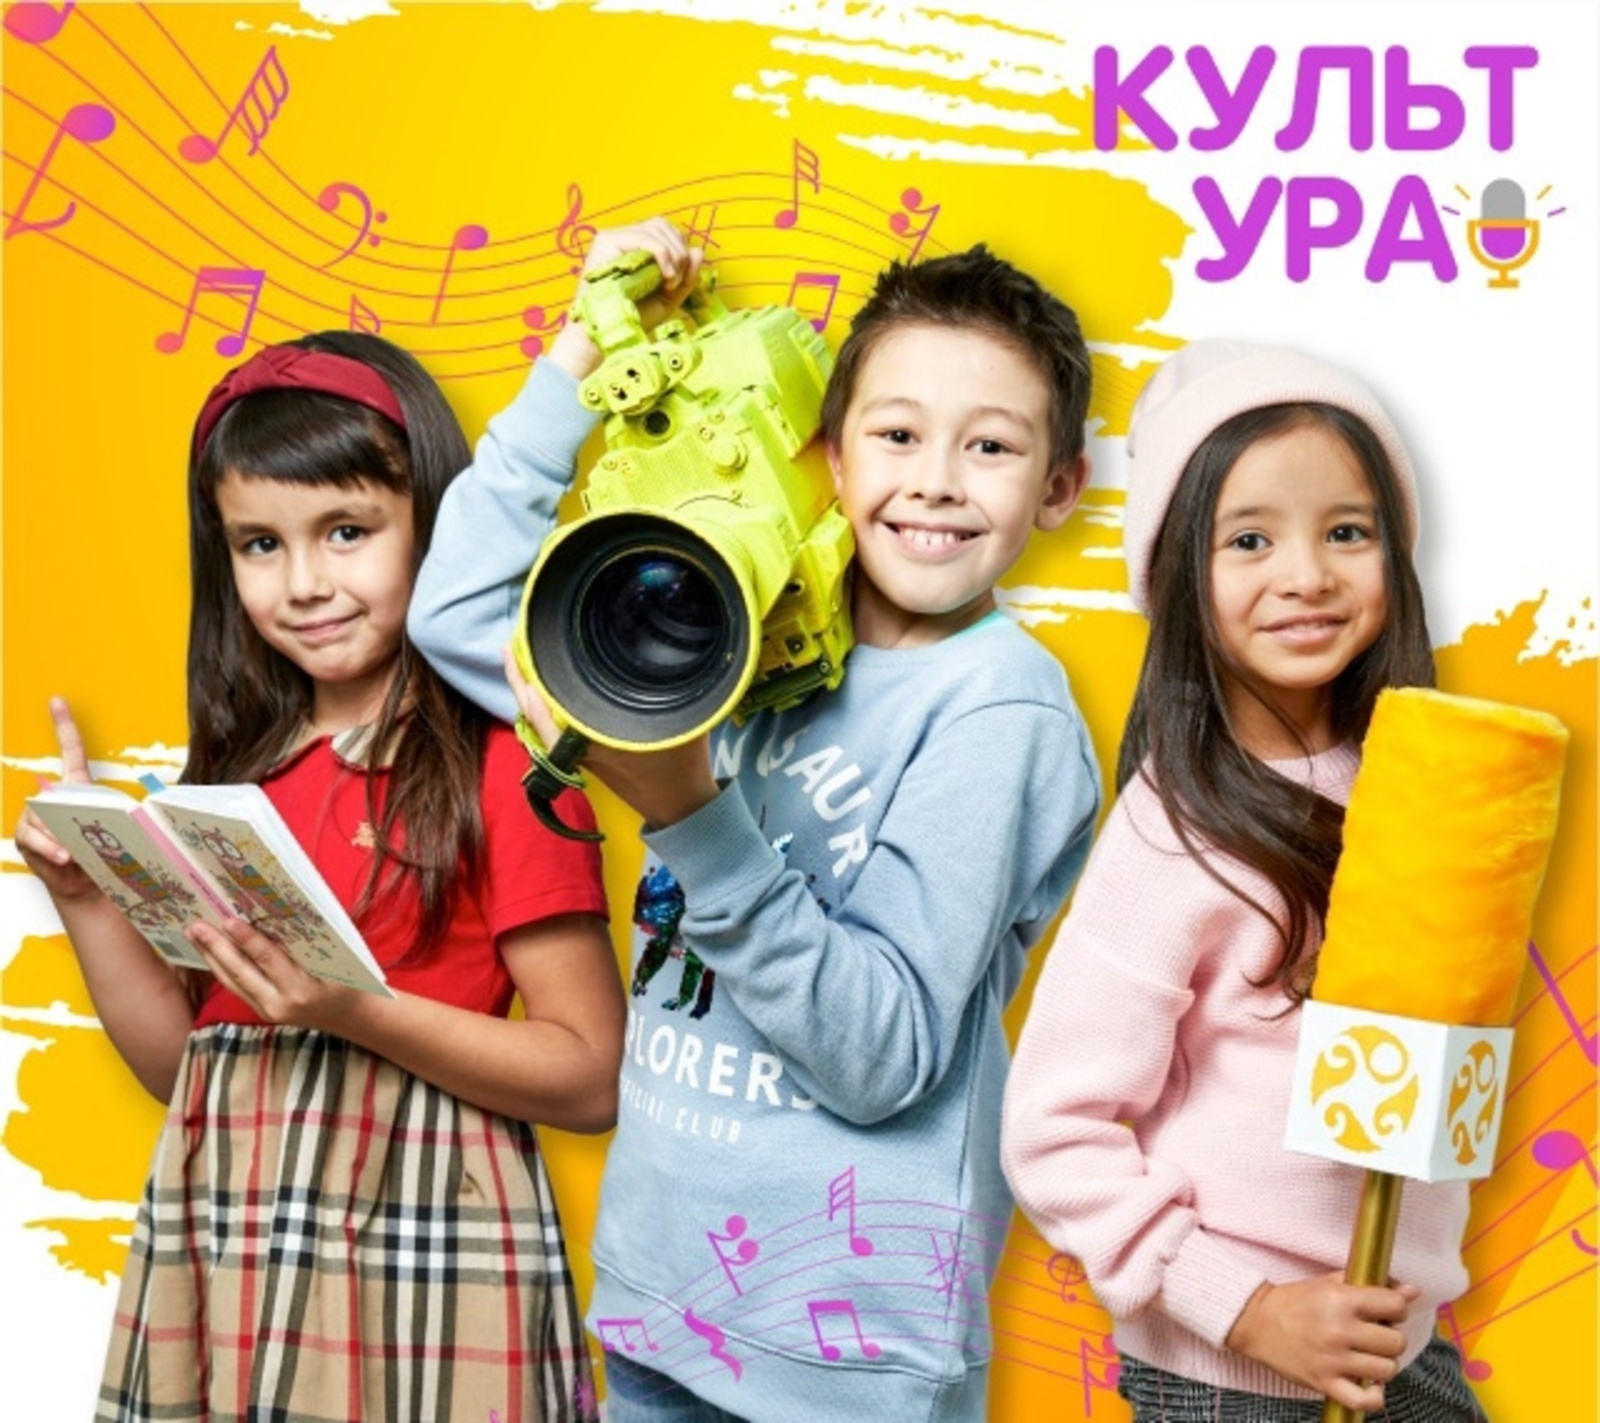 В Уфе состоится первый фестиваль "КультУРА"